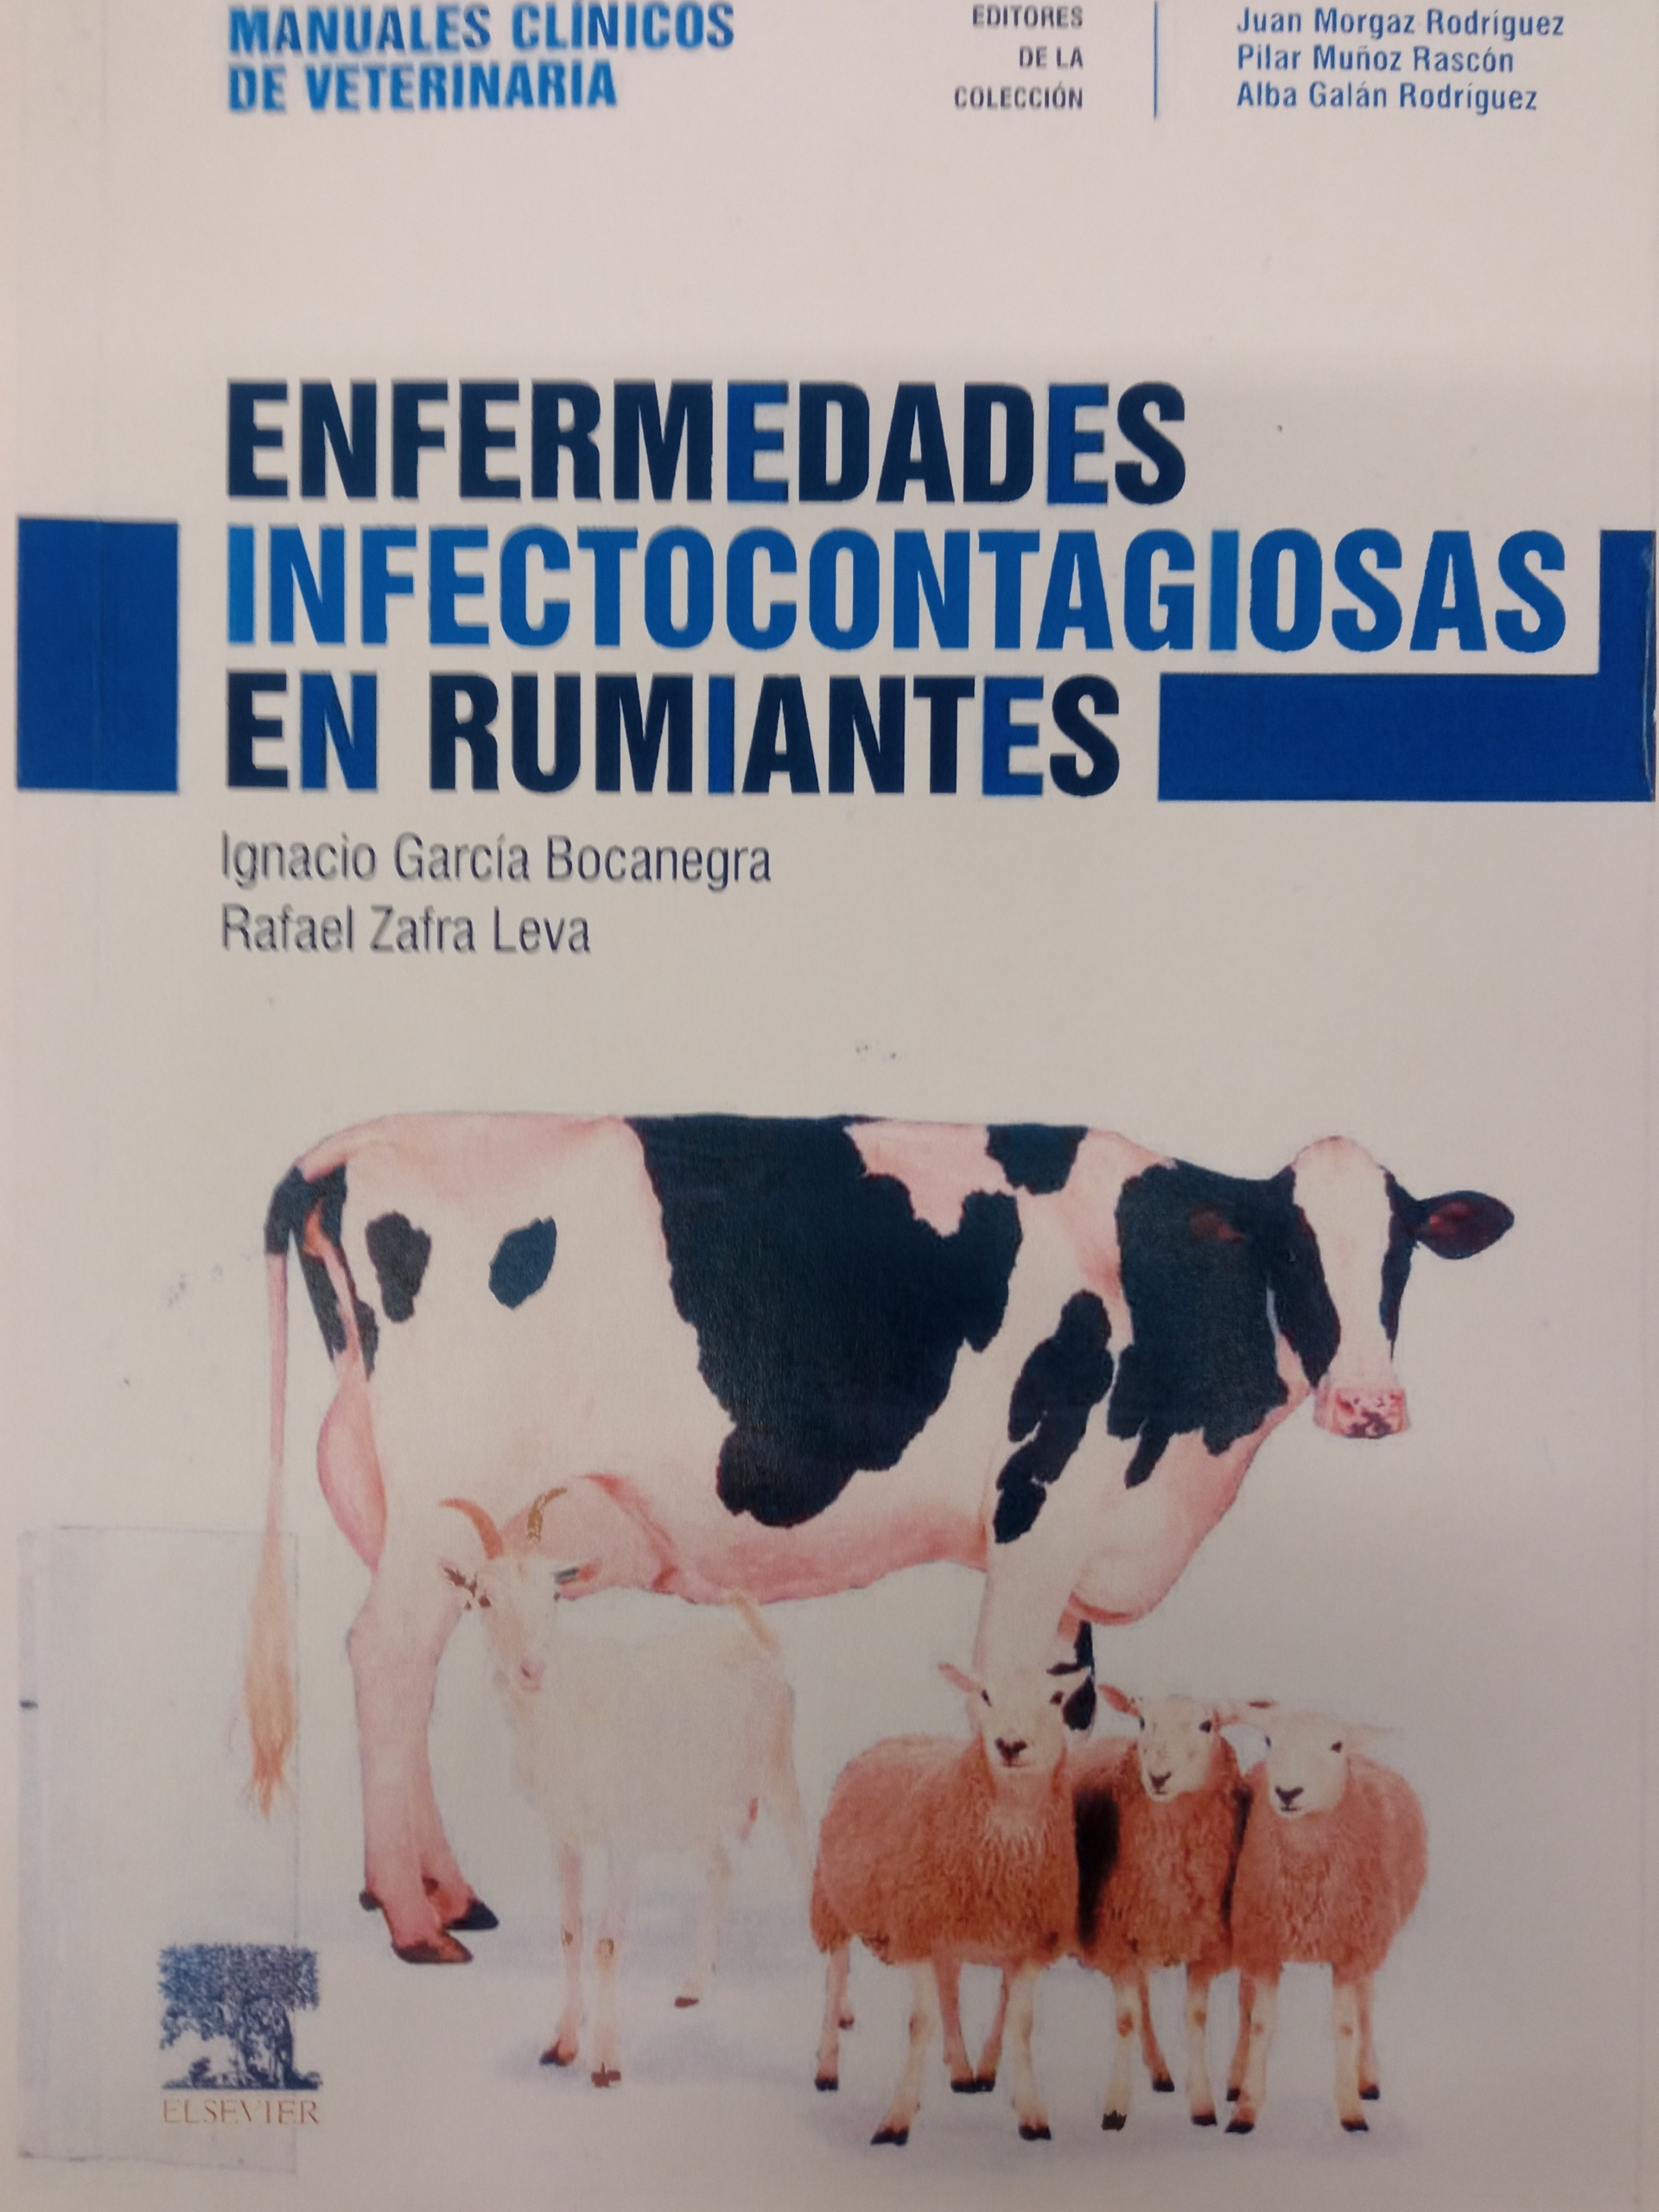 Imagen de portada del libro Enfermedades infectocontagiosas en rumiantes